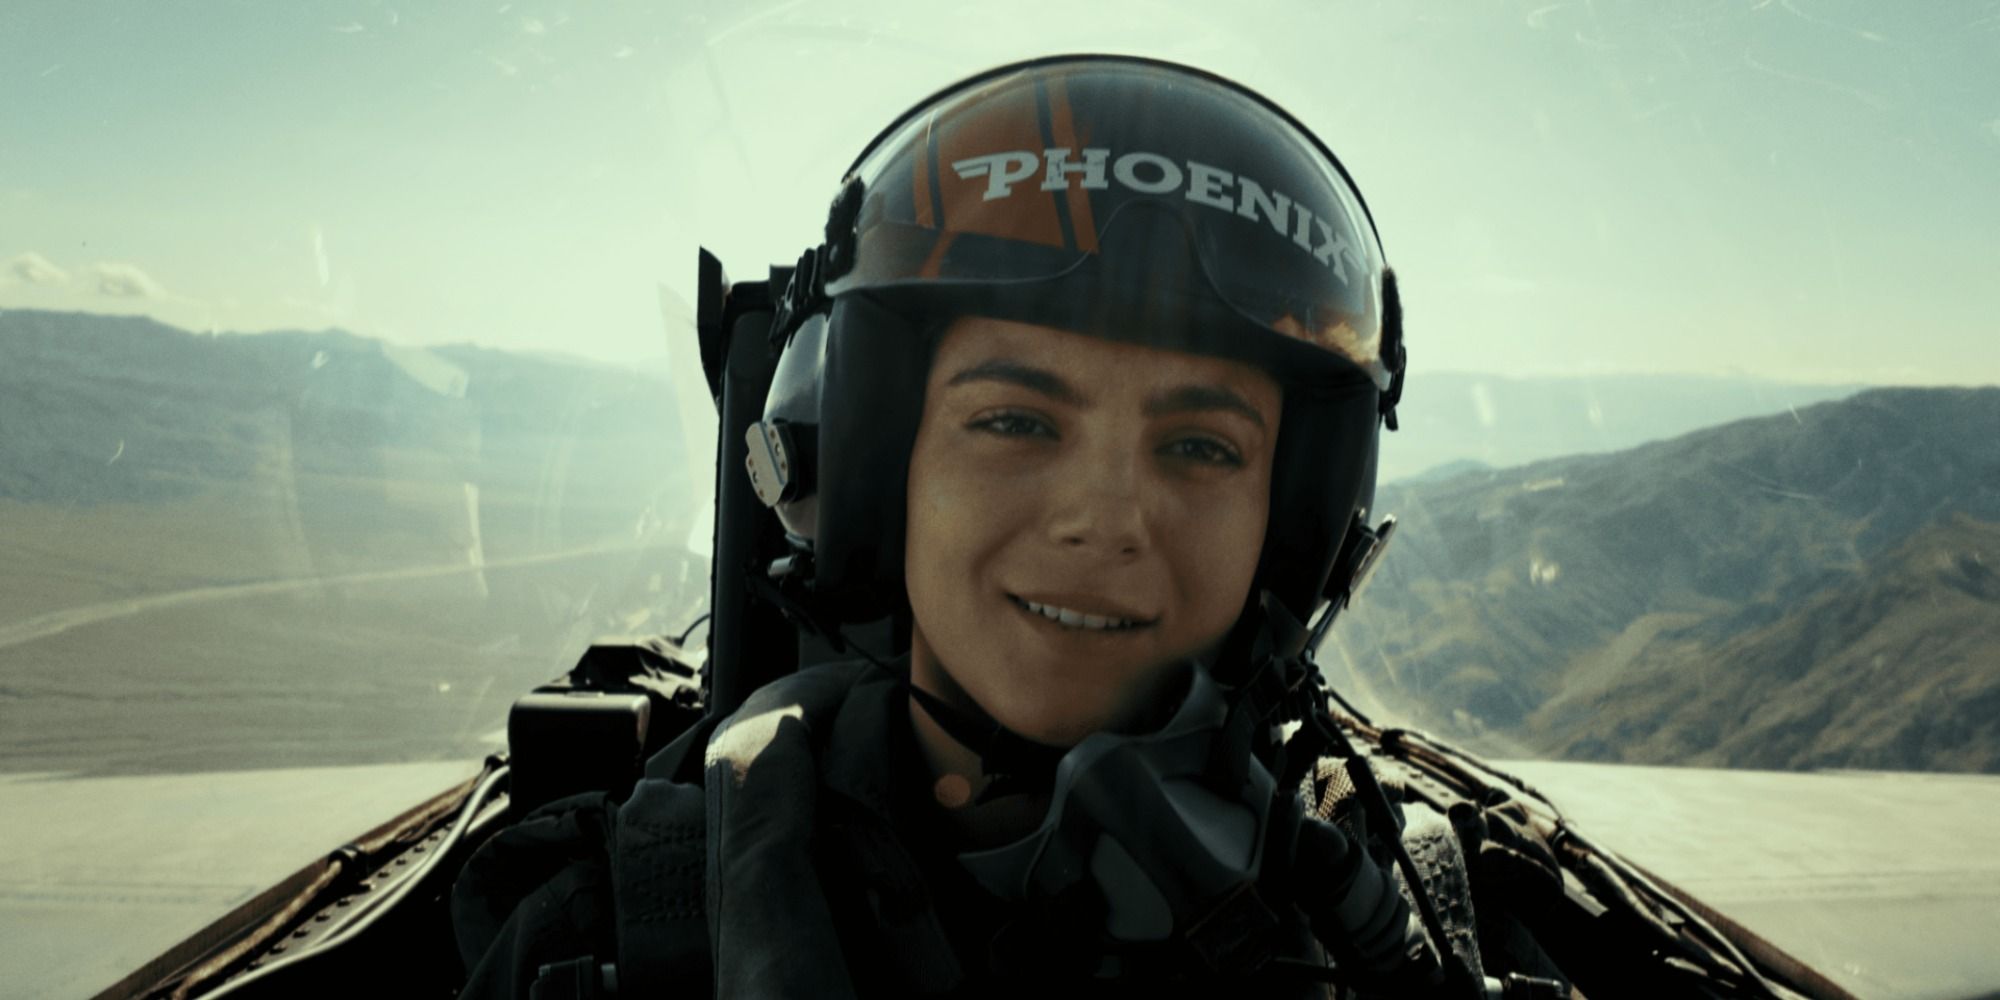 Monica Barbaro nei panni di Phoenix nel volo della cabina di pilotaggio 